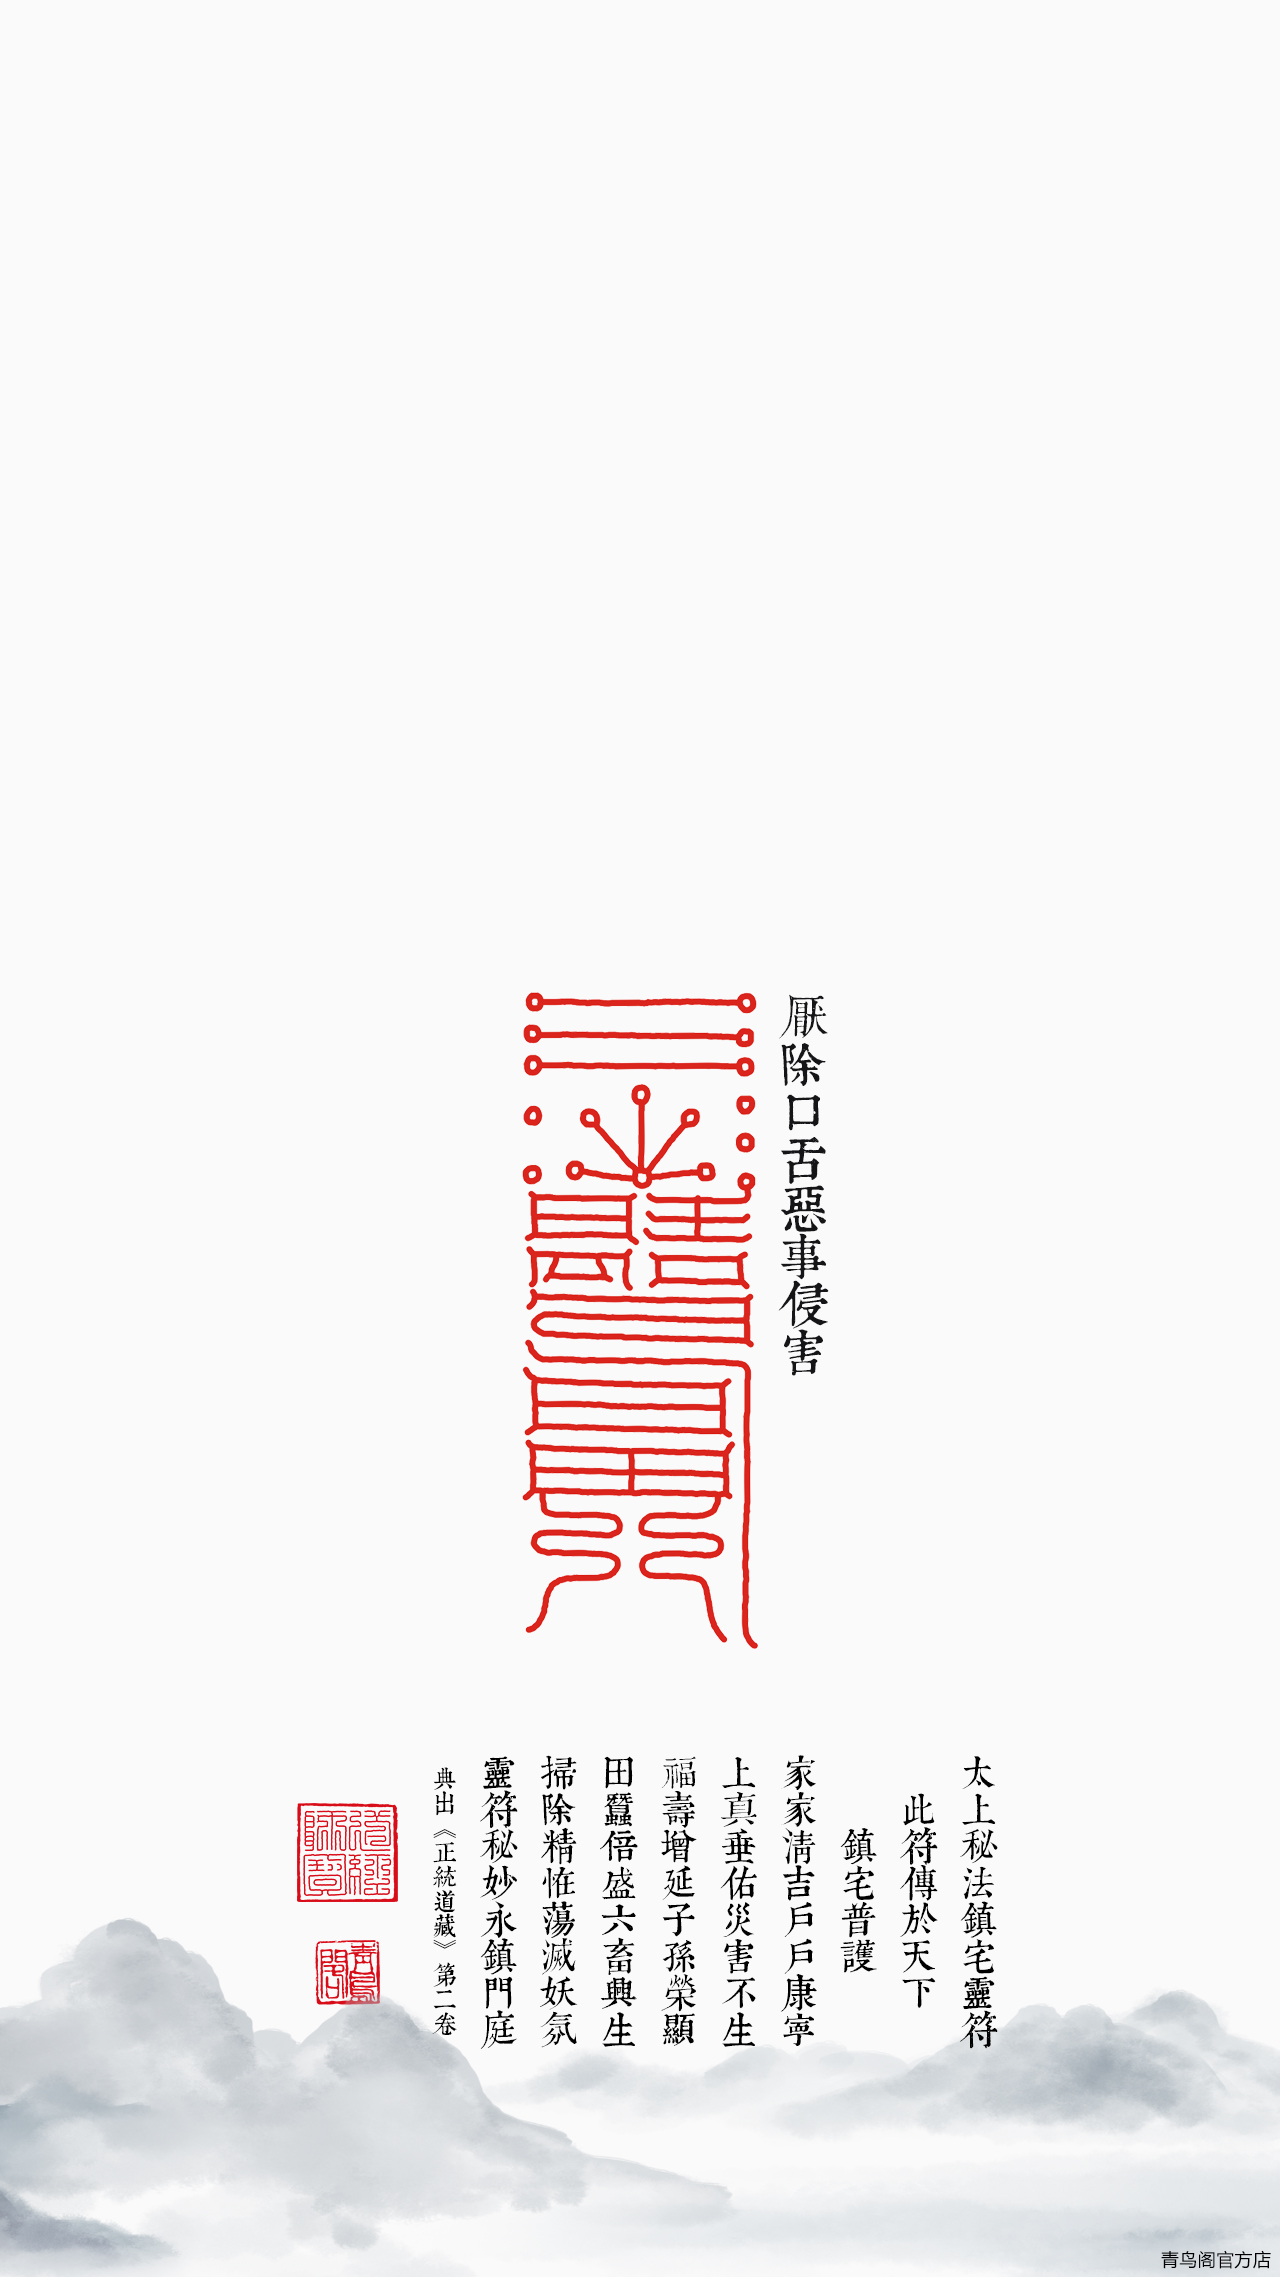 中国镇灵符图片